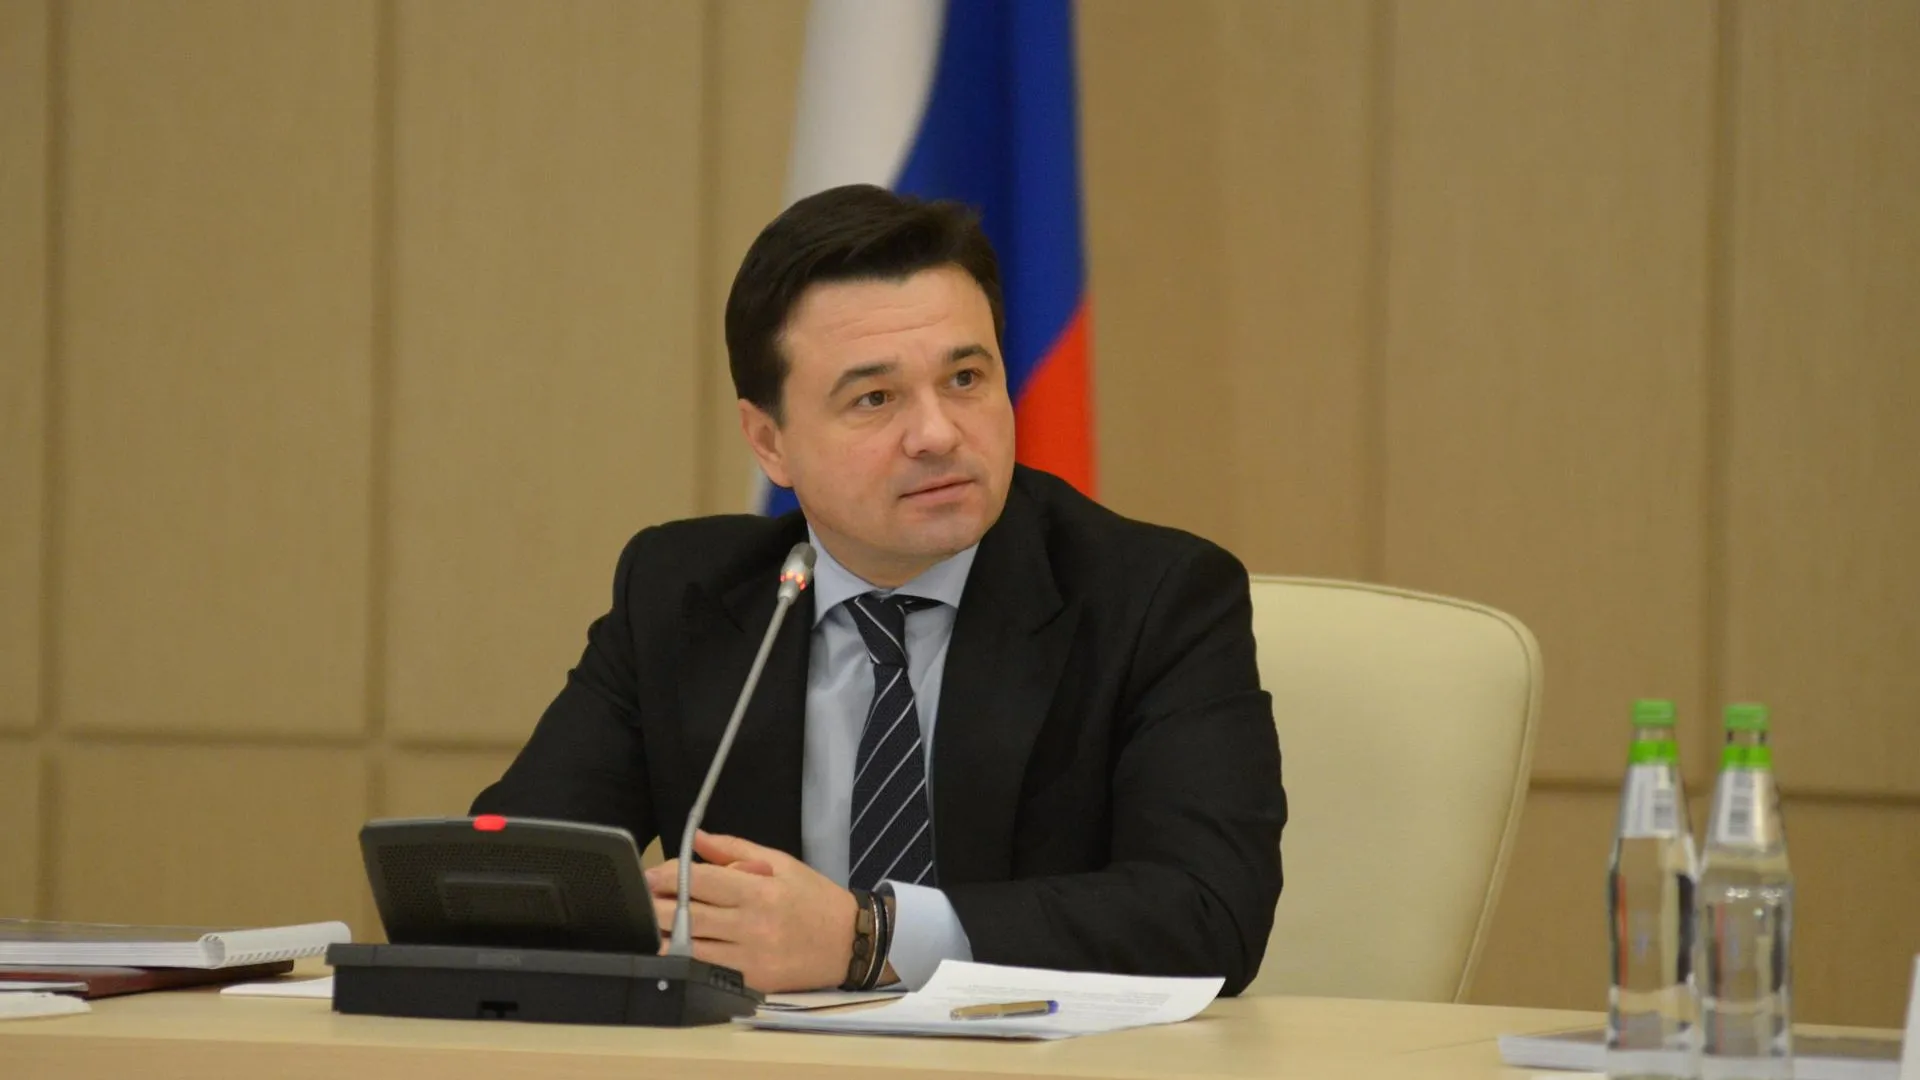 Воробьев призвал жителей Подмосковья принять участие в голосовании на выборах 18 сентября